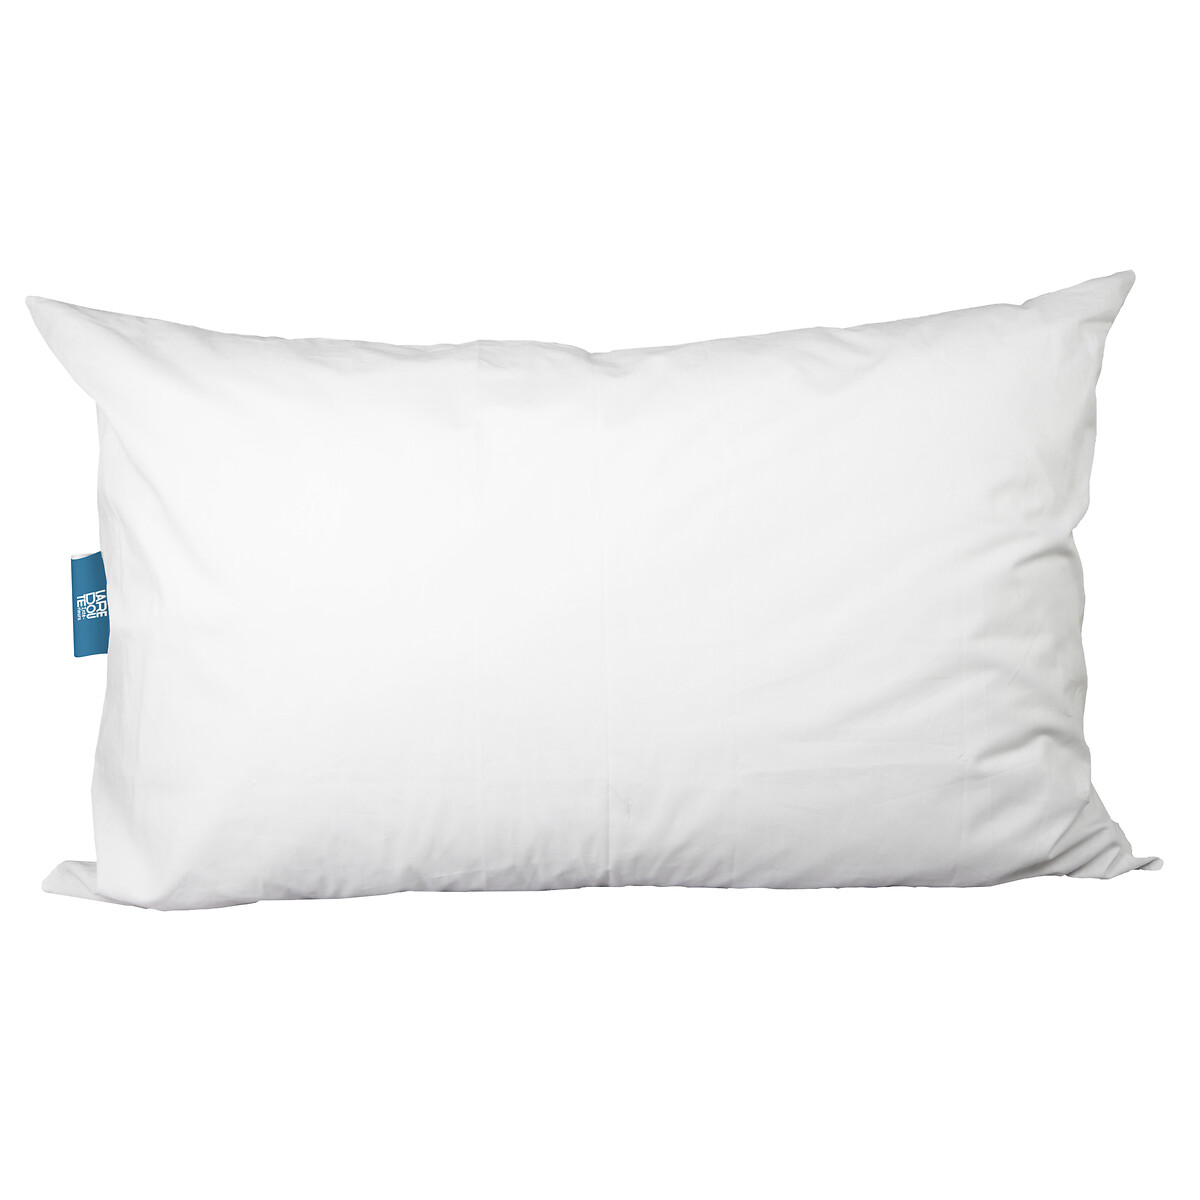 Подушка Среднего размера из синтетики Big pillow 65 x 100 см белый